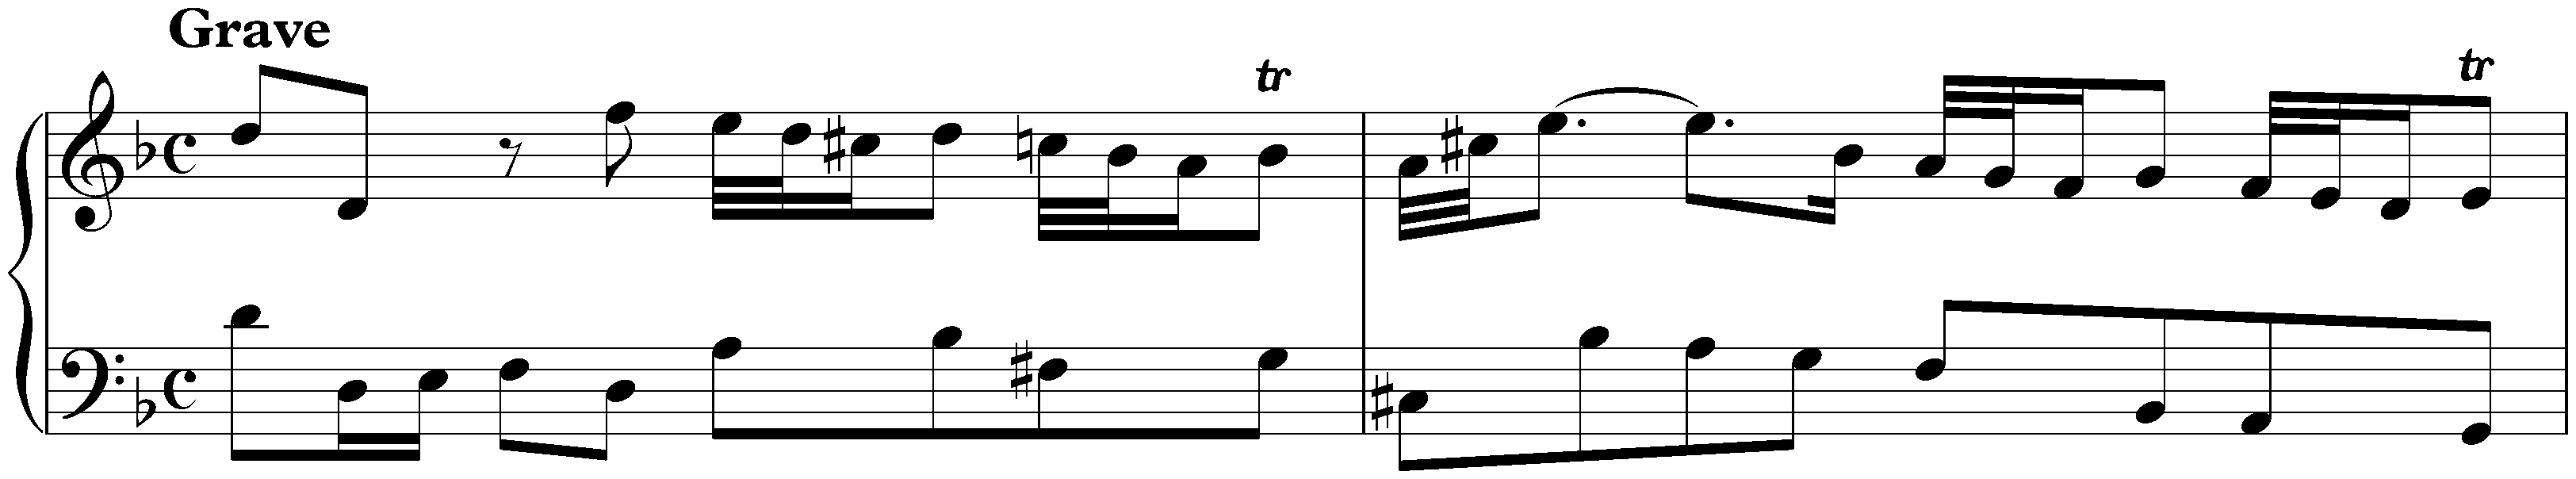 Sonata in D minor, K. 90; 1. Grave